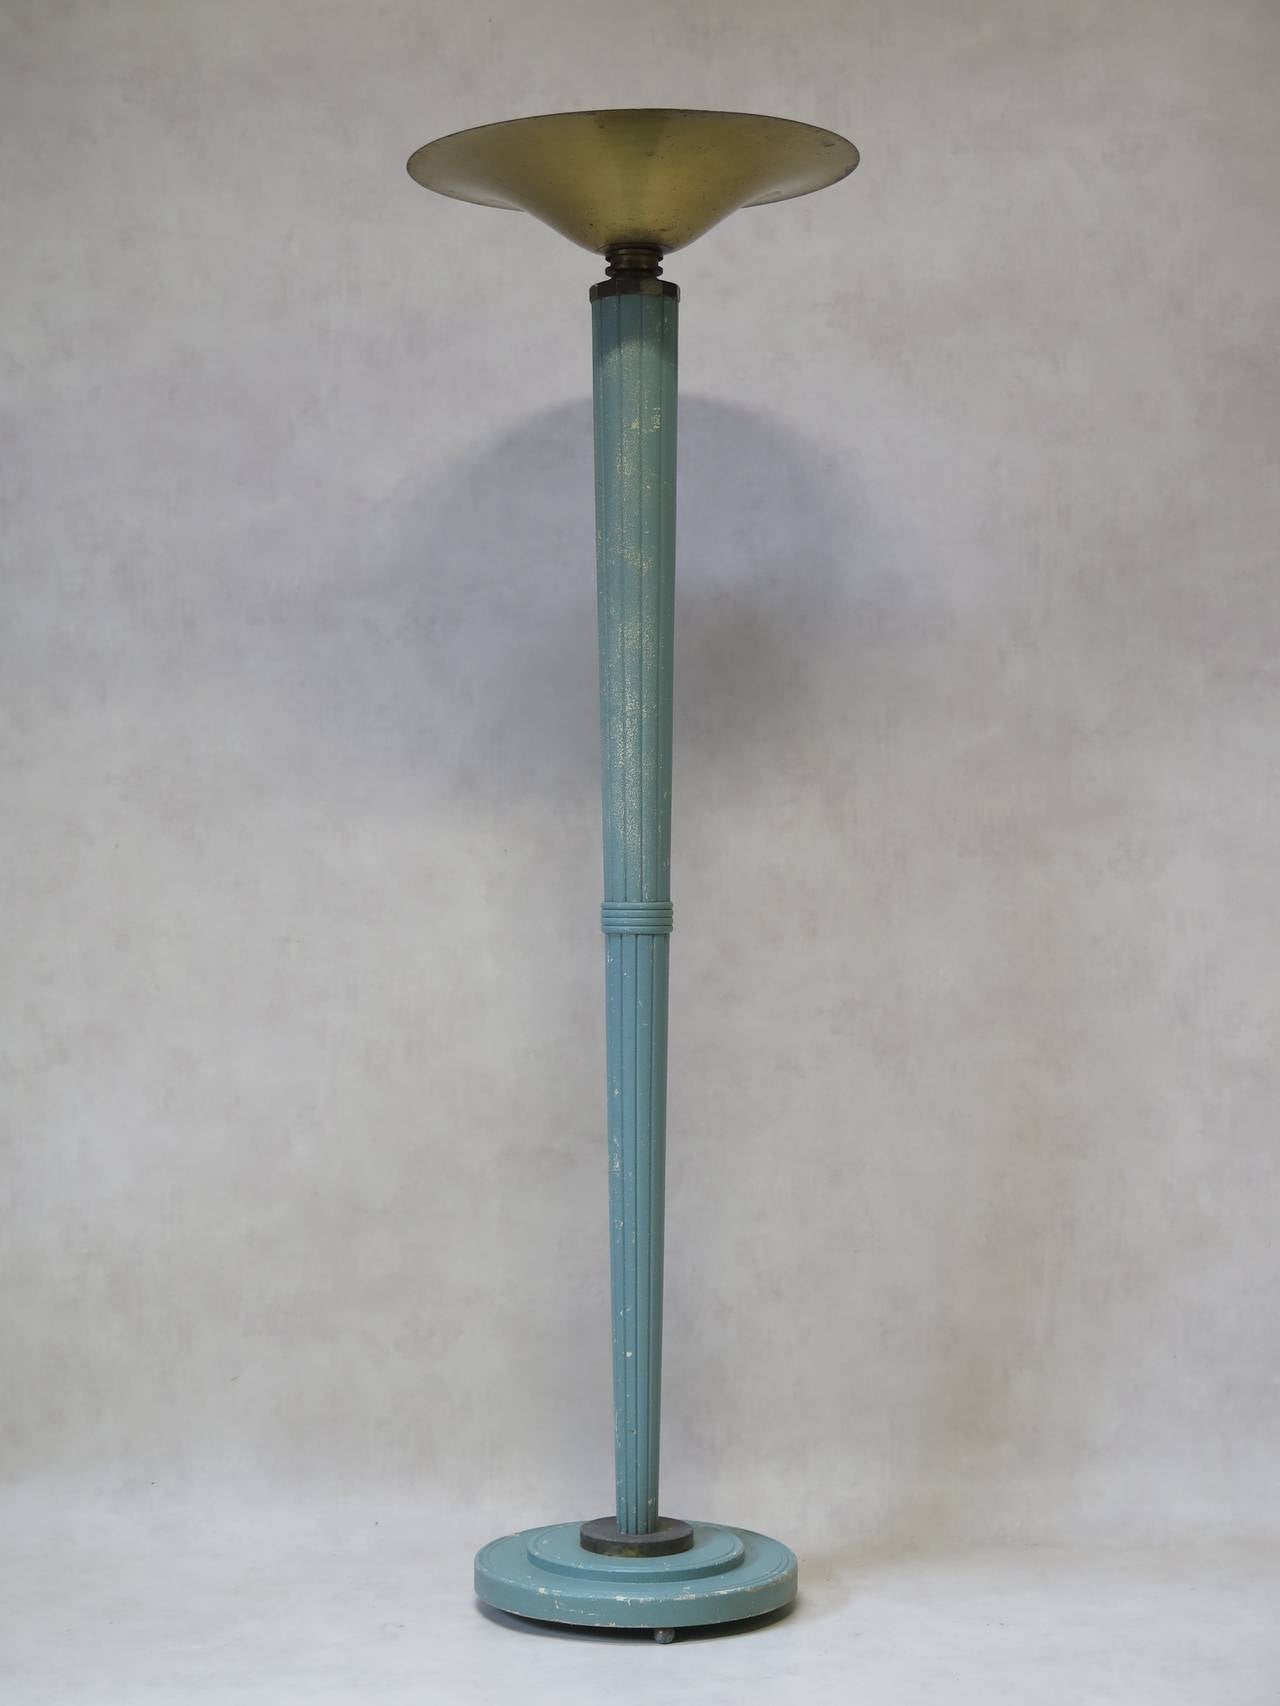 Elegante Art-Déco-Stehlampe aus den 1930er Jahren mit einer sich verjüngenden und geriffelten Holzsäule, hellblau-grün lackiert. Abgestufter Sockel. Die Säule trägt eine große Schale aus oxidiertem Messing.